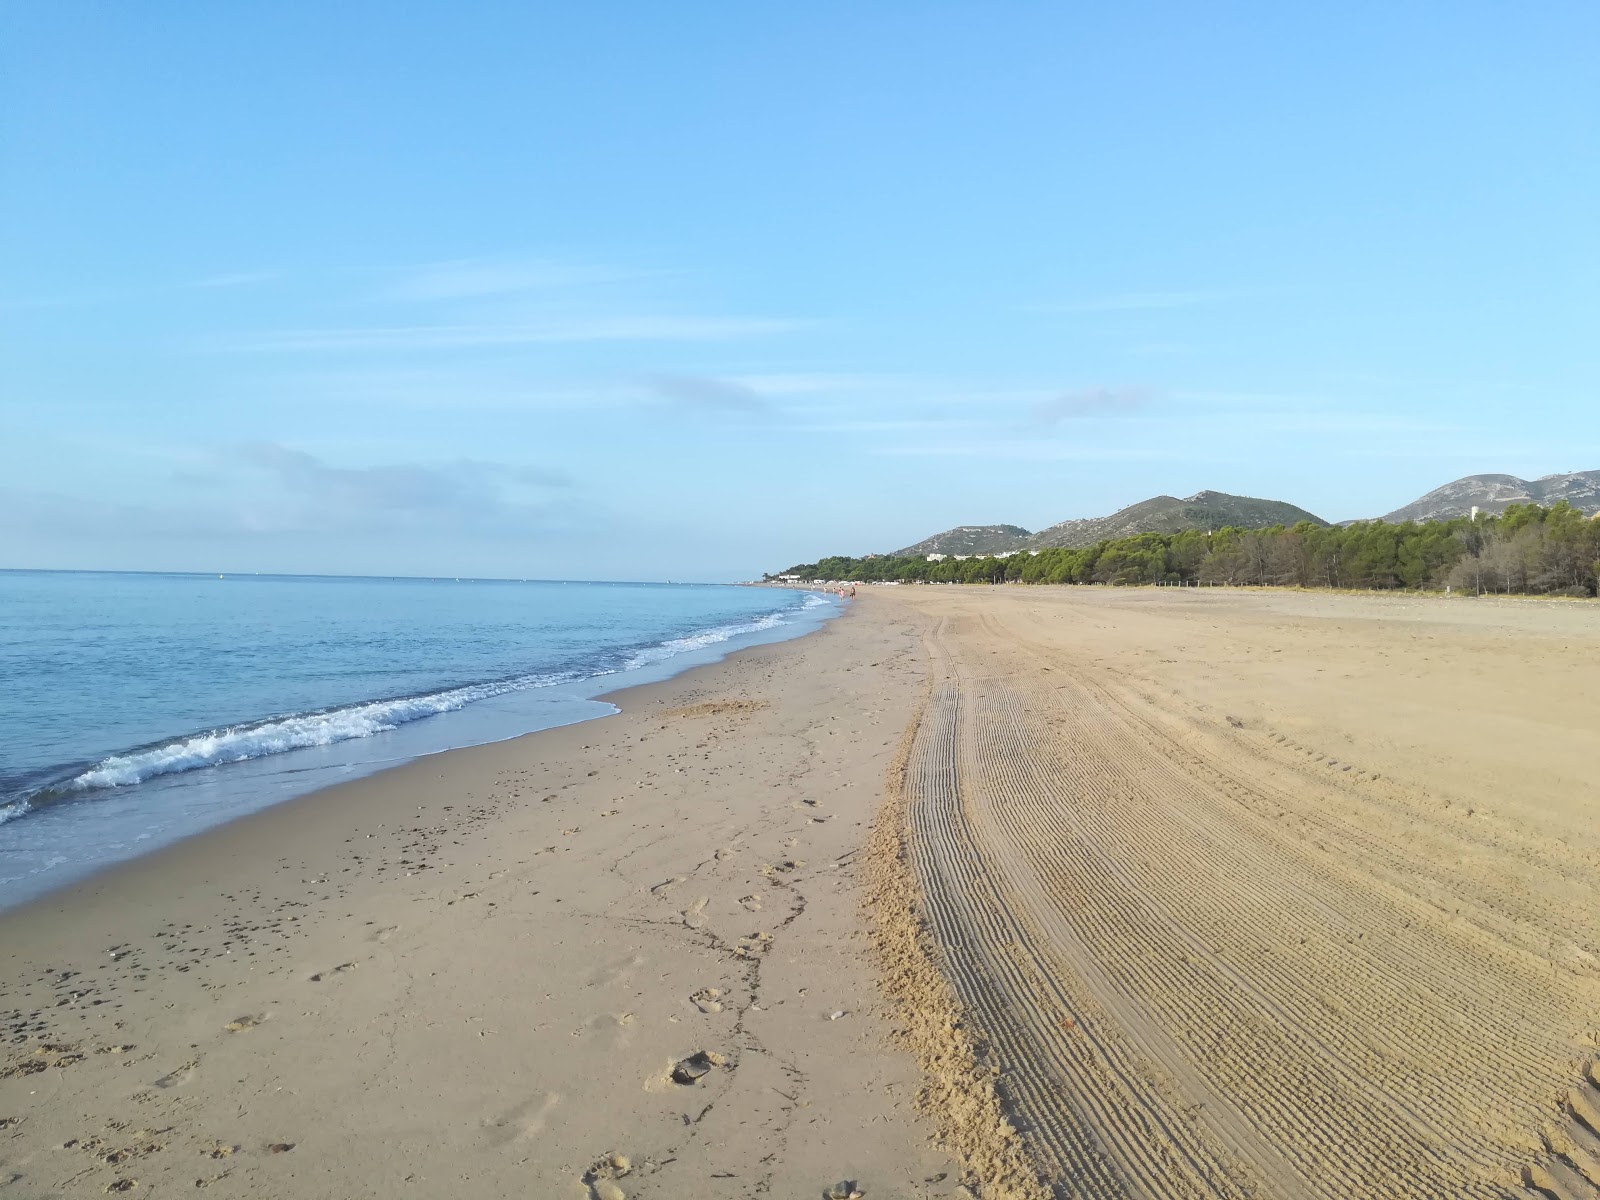 Foto de L'Hospitalet beach com areia brilhante superfície